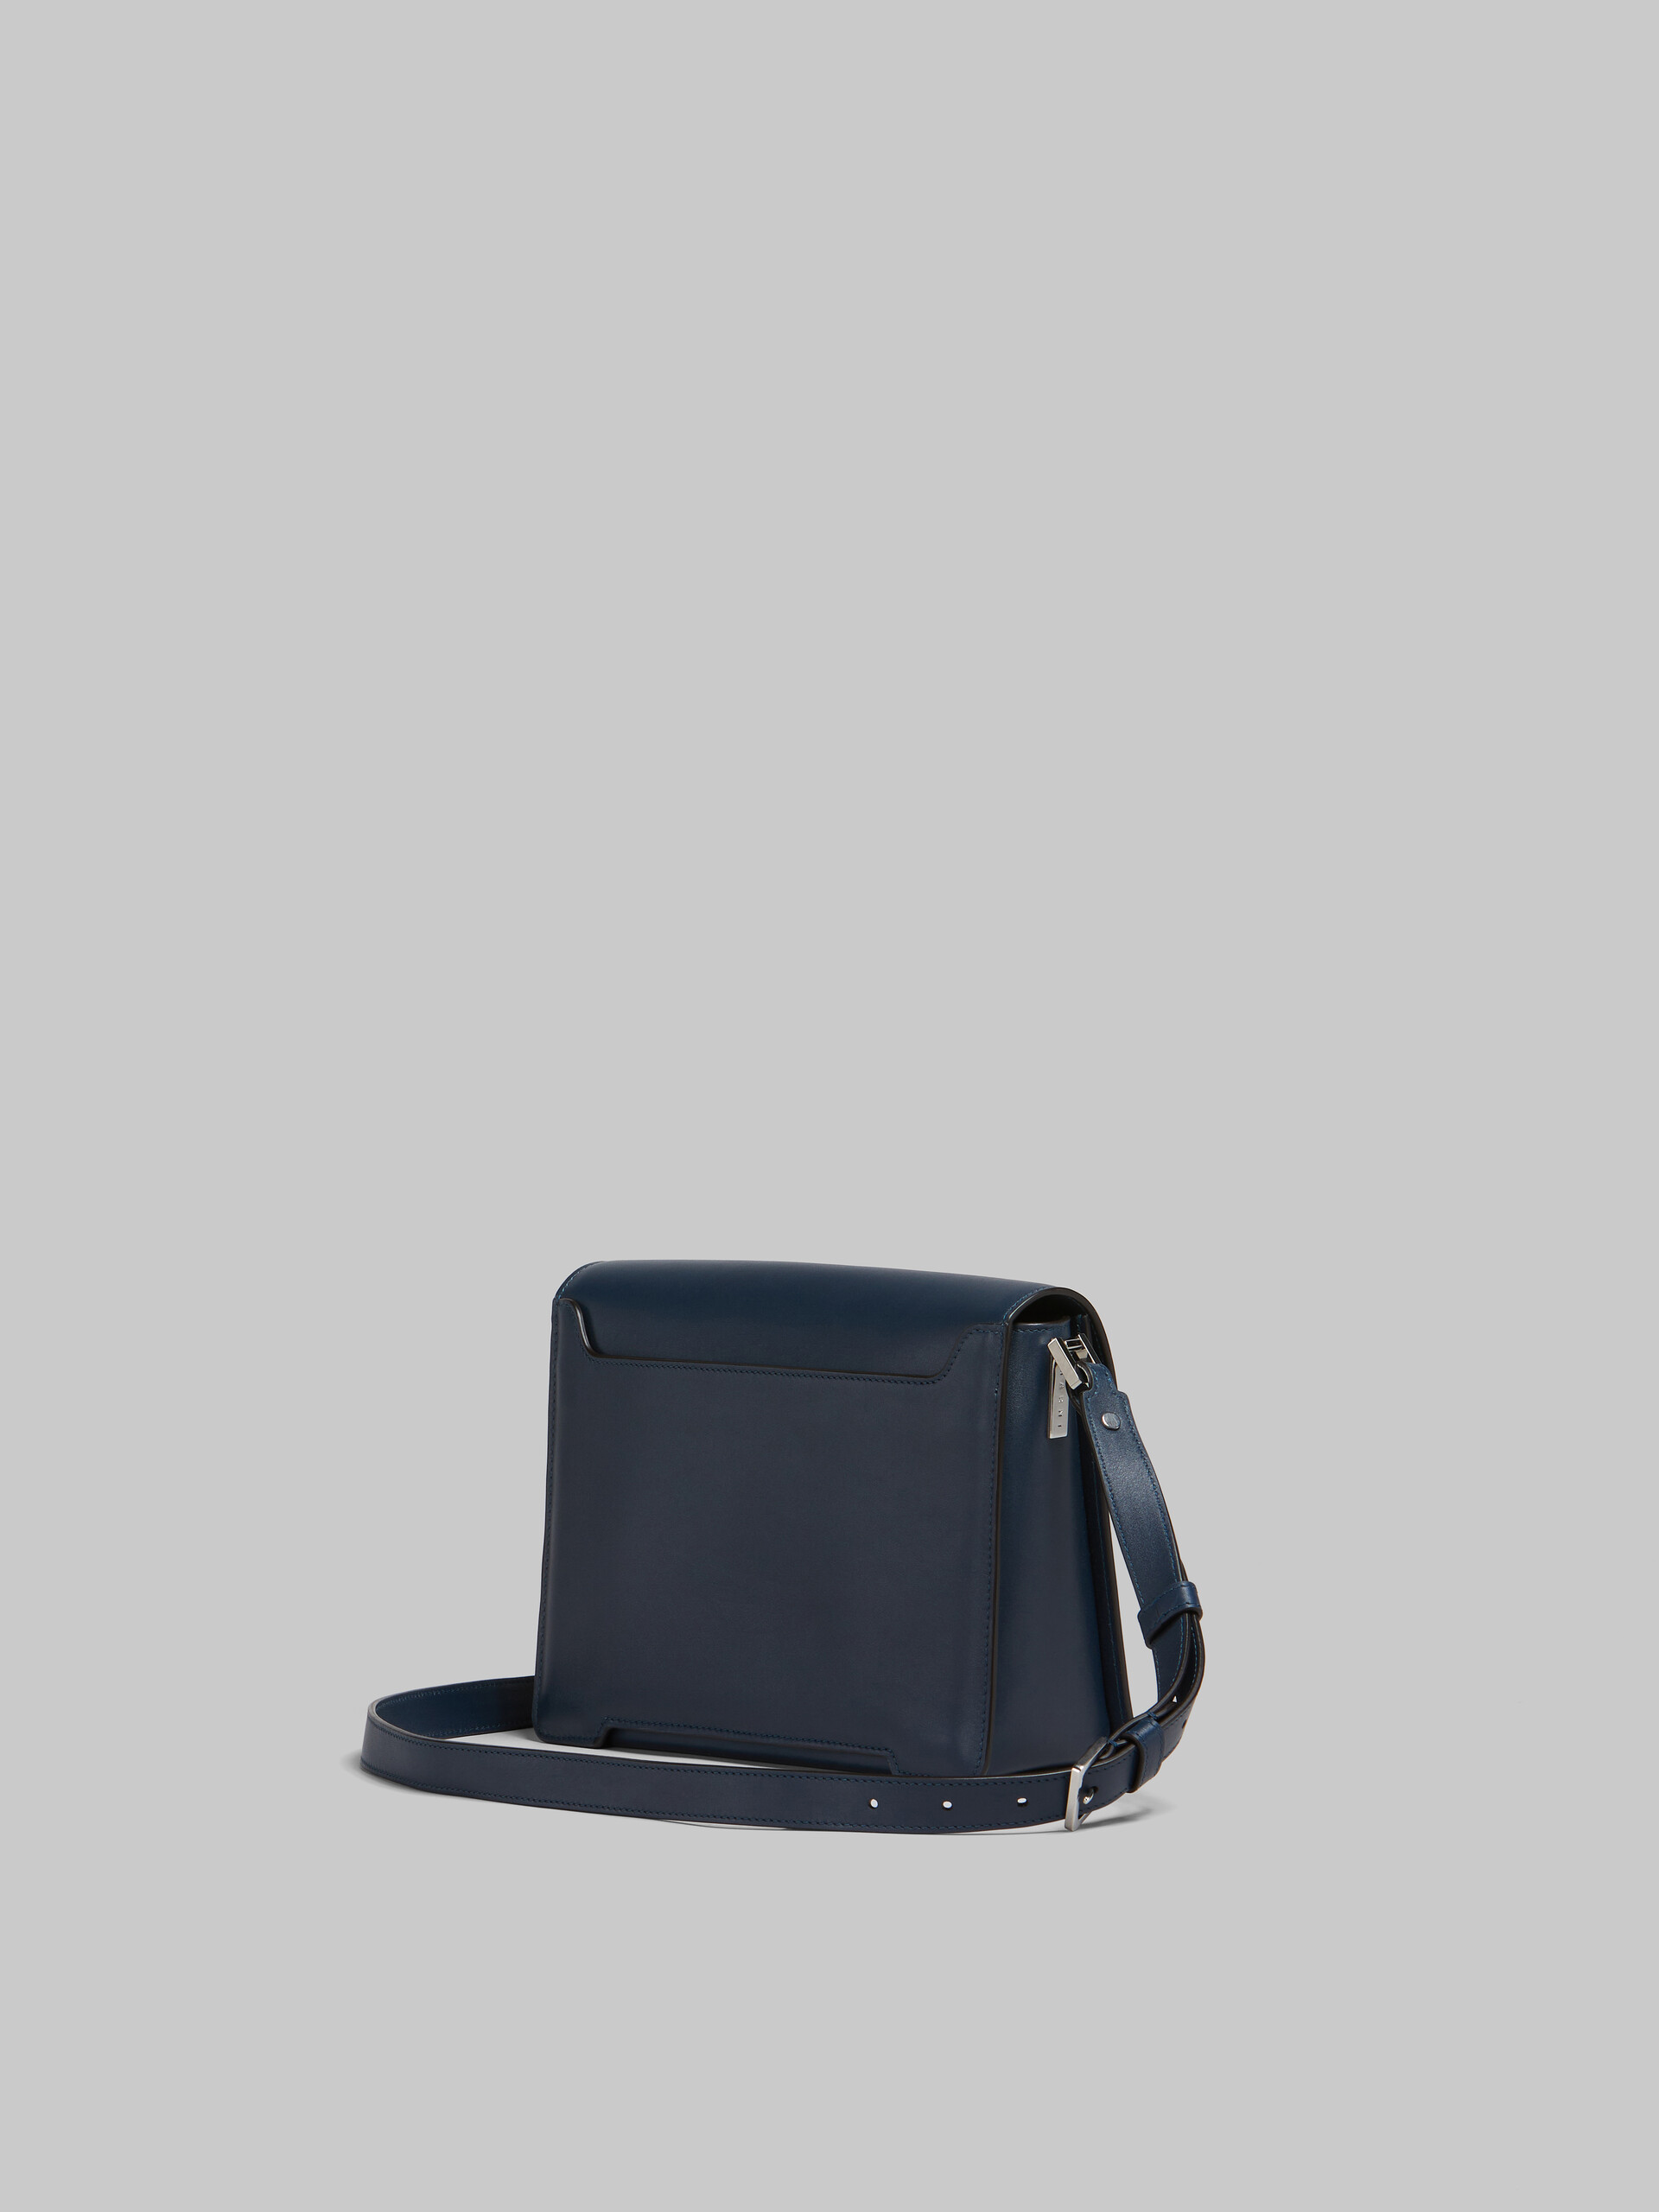 Deep blue leather Trunkaroo medium shoulder bag - Shoulder Bag - Image 3